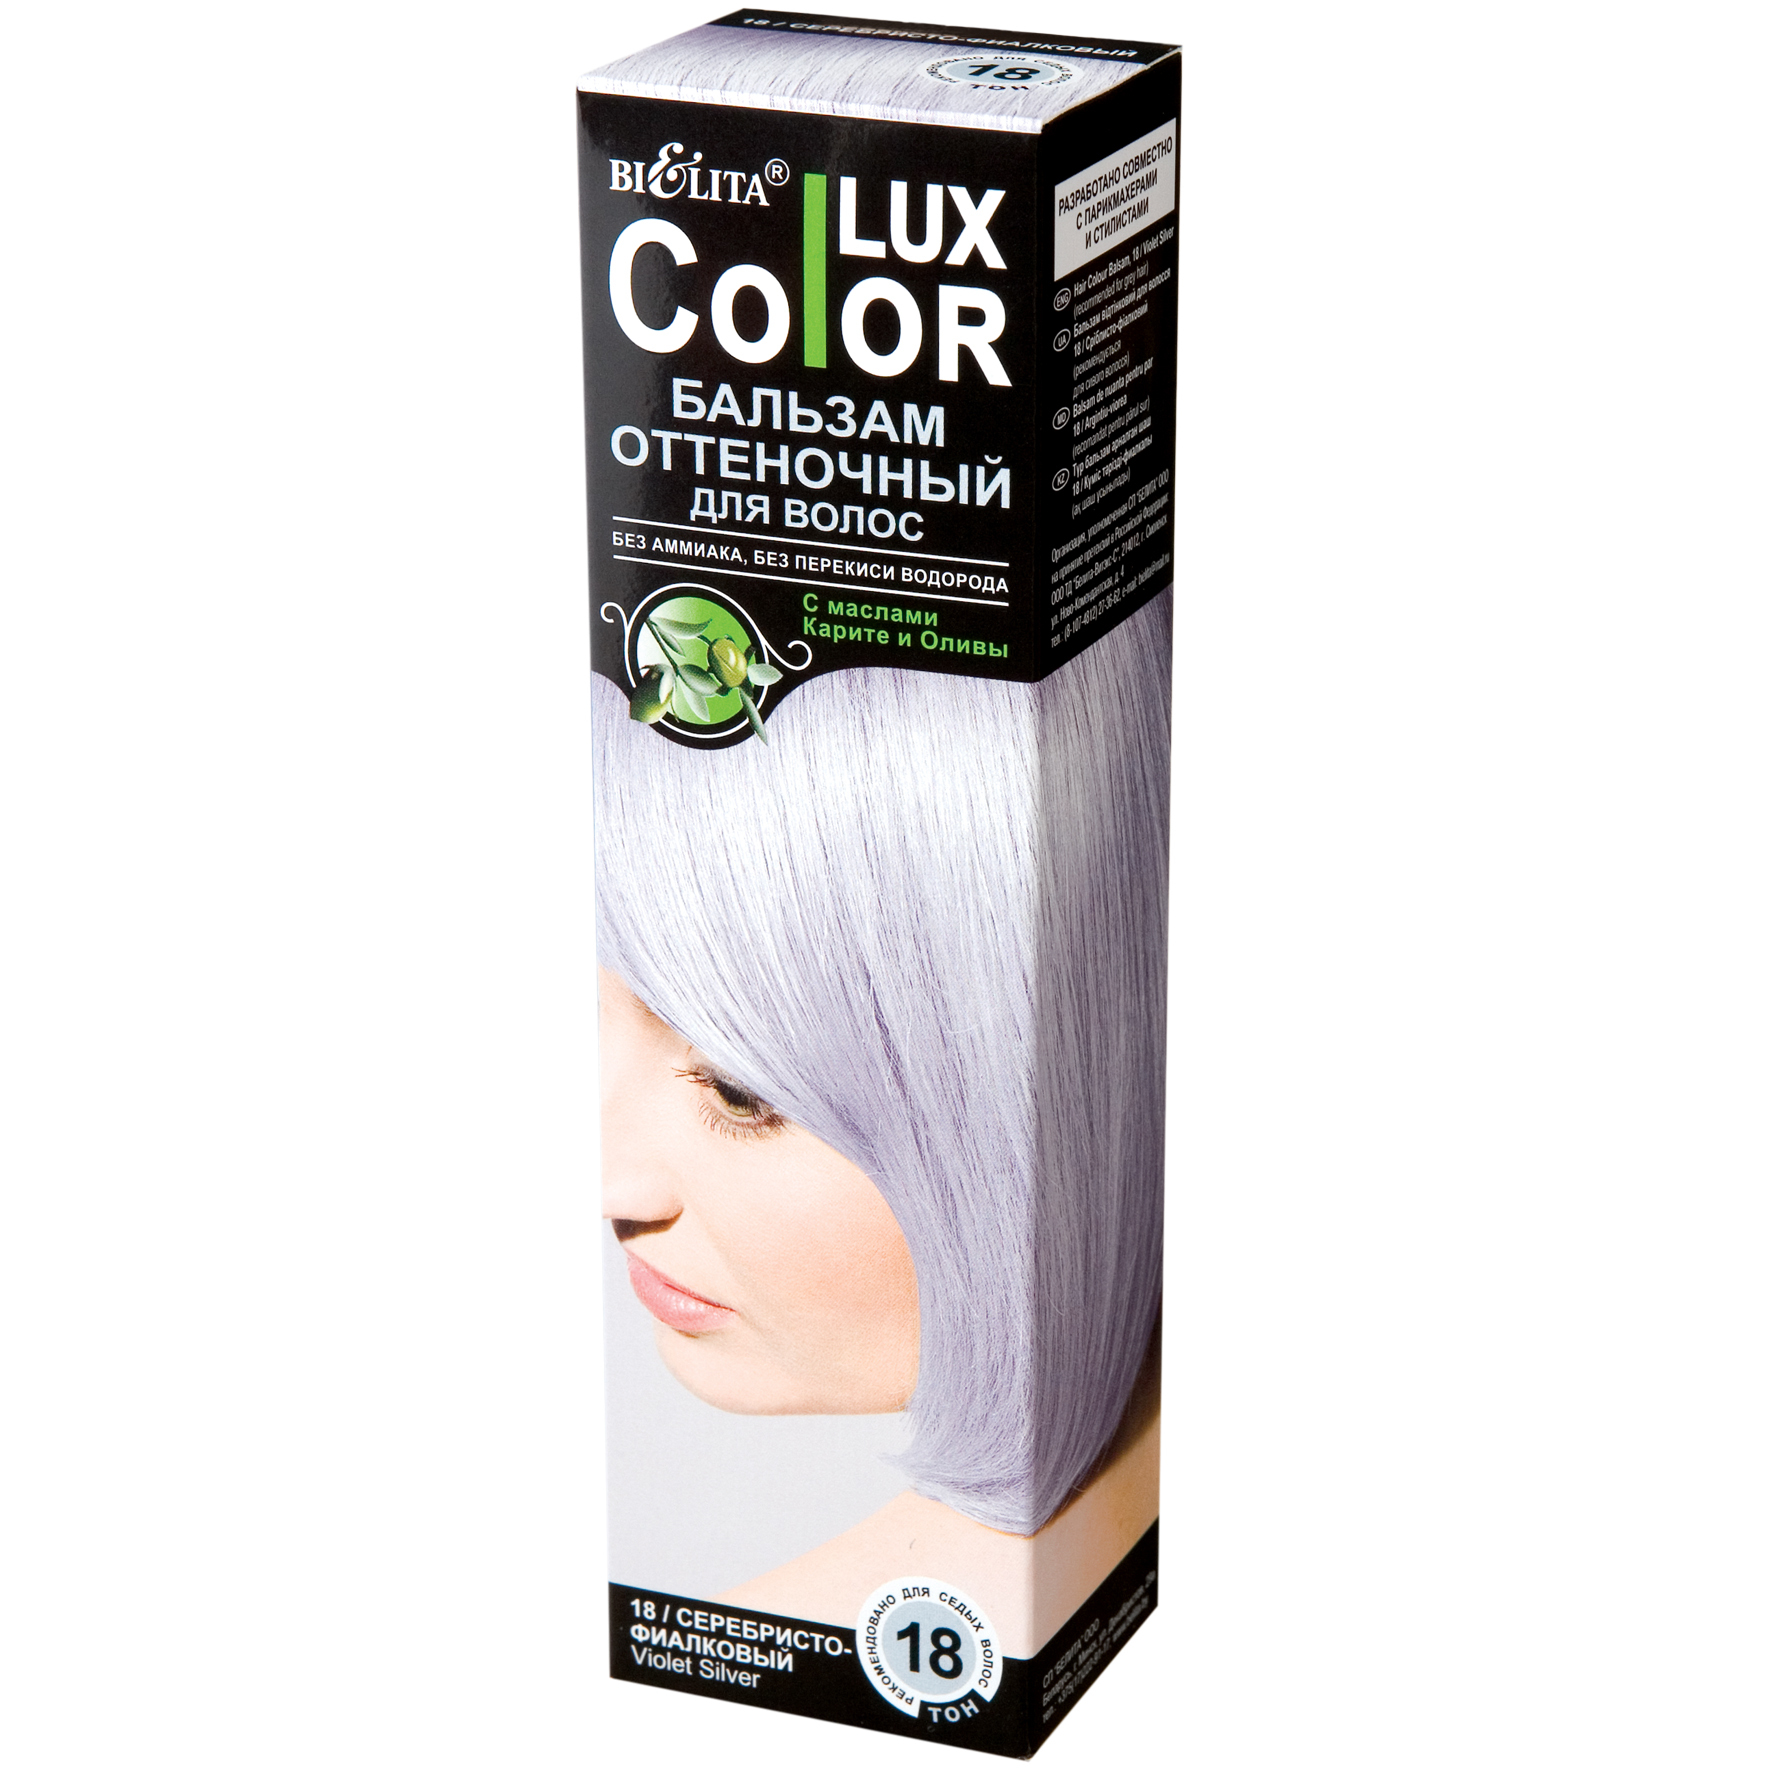 Белорусский оттеночный. Lux Color бальзам оттеночный Color Lux 18. Белита колор Люкс оттеночный бальзам. Оттеночный бальзам для волос "Color Lux" тон: 19 серебристый 100 мл. Bielita Color Lux бальзам оттеночный.